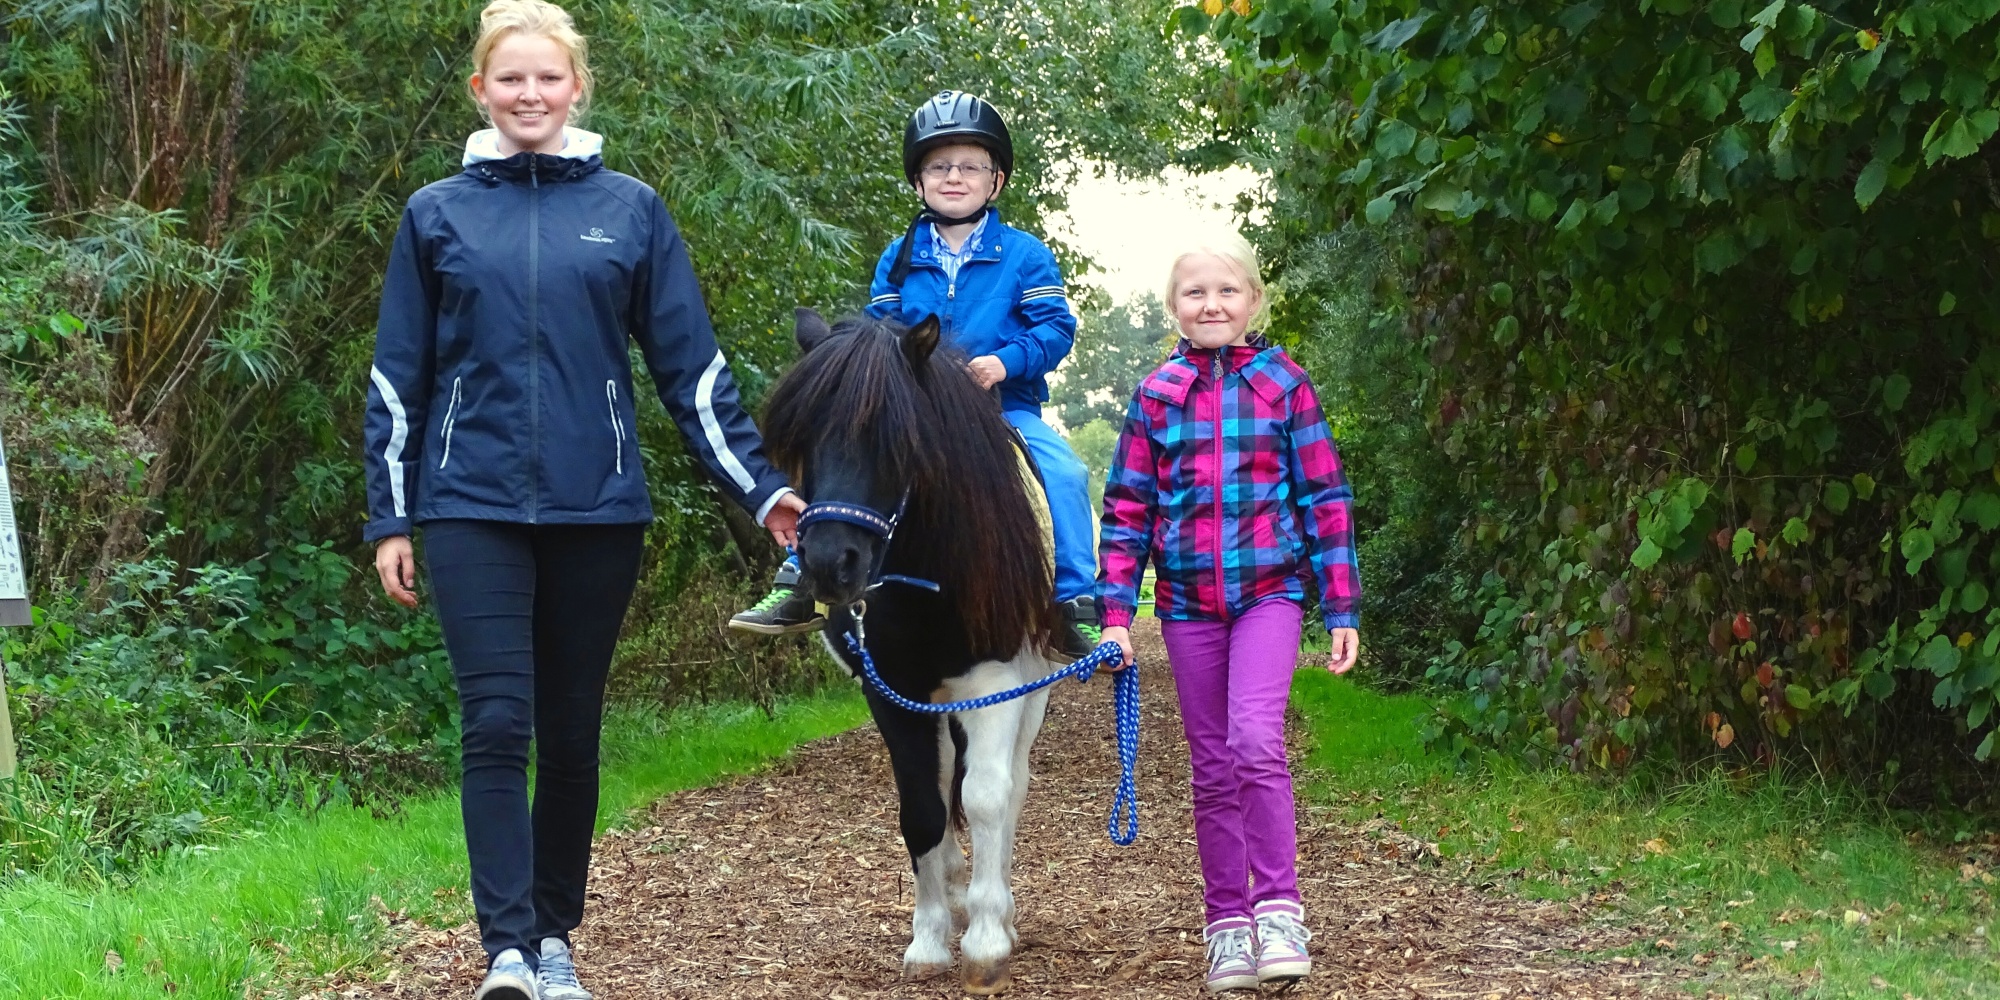 Kinder und Jugendliche führen ein Pony mit einem kleinen Reiter auf seinem Rücken